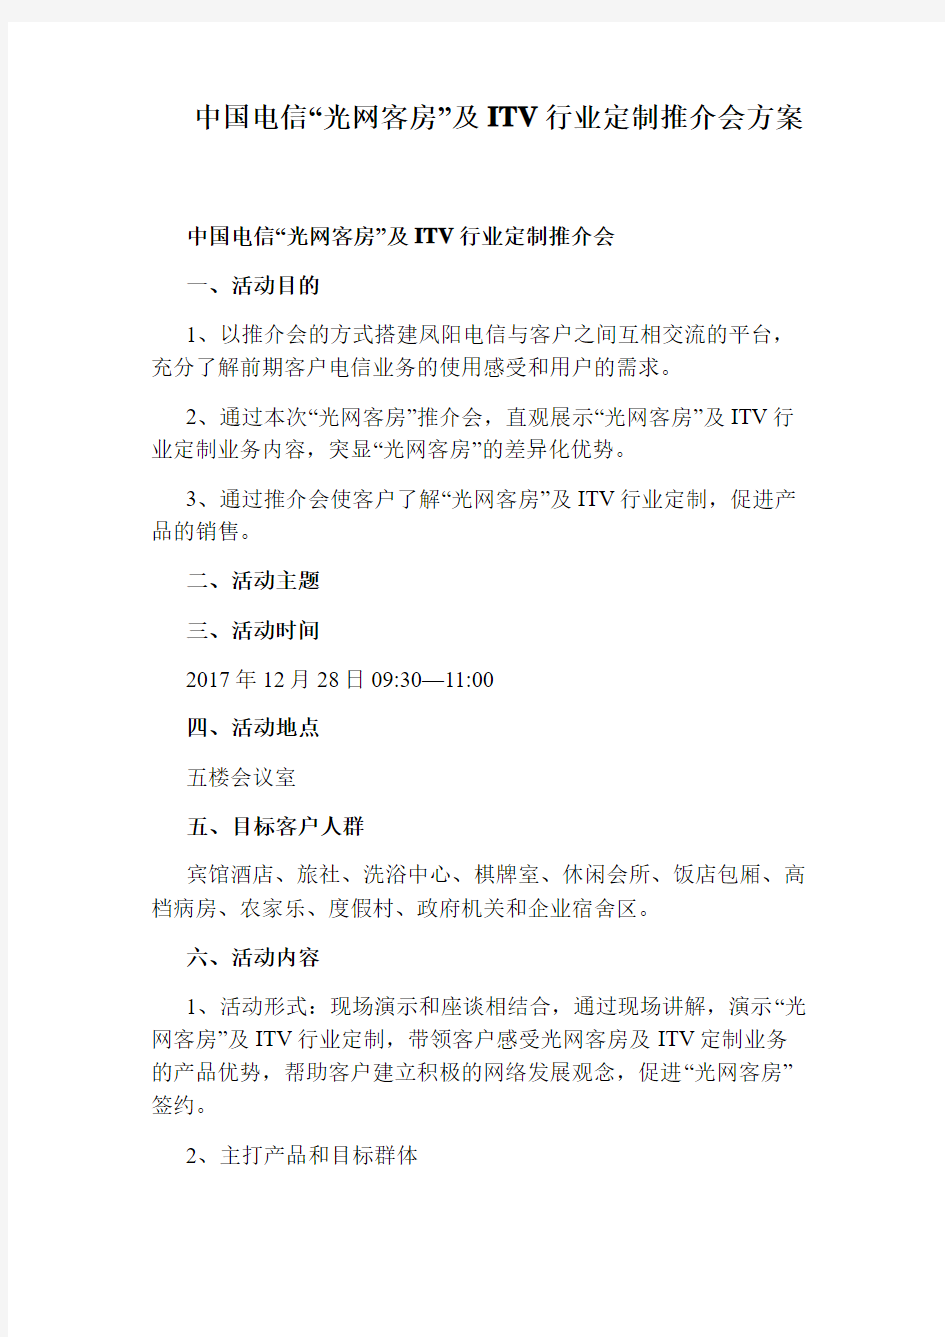 中国电信“光网客房”及ITV行业定制推介会方案